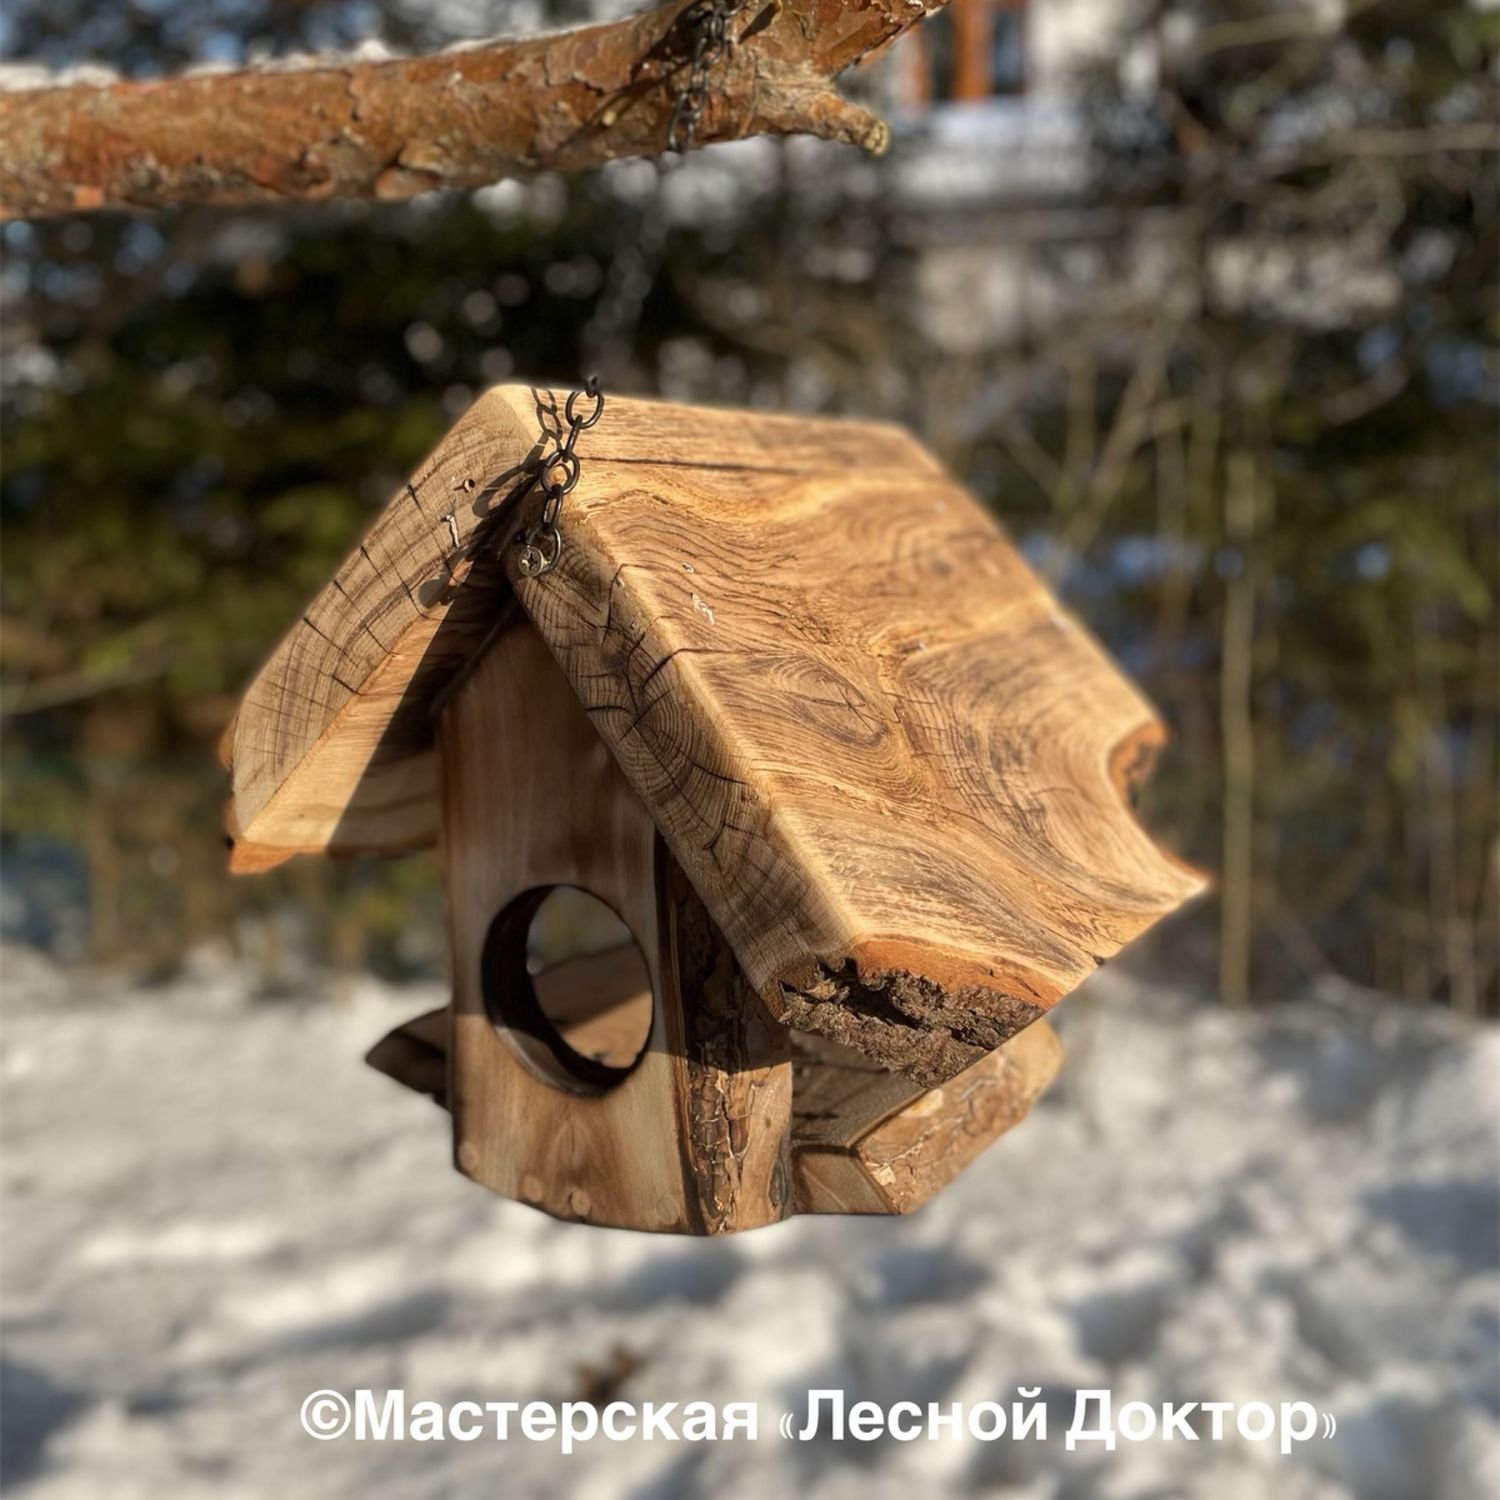 Деревянная кормушка для птиц - треугольная (домики и кормушки для птиц) - symbol